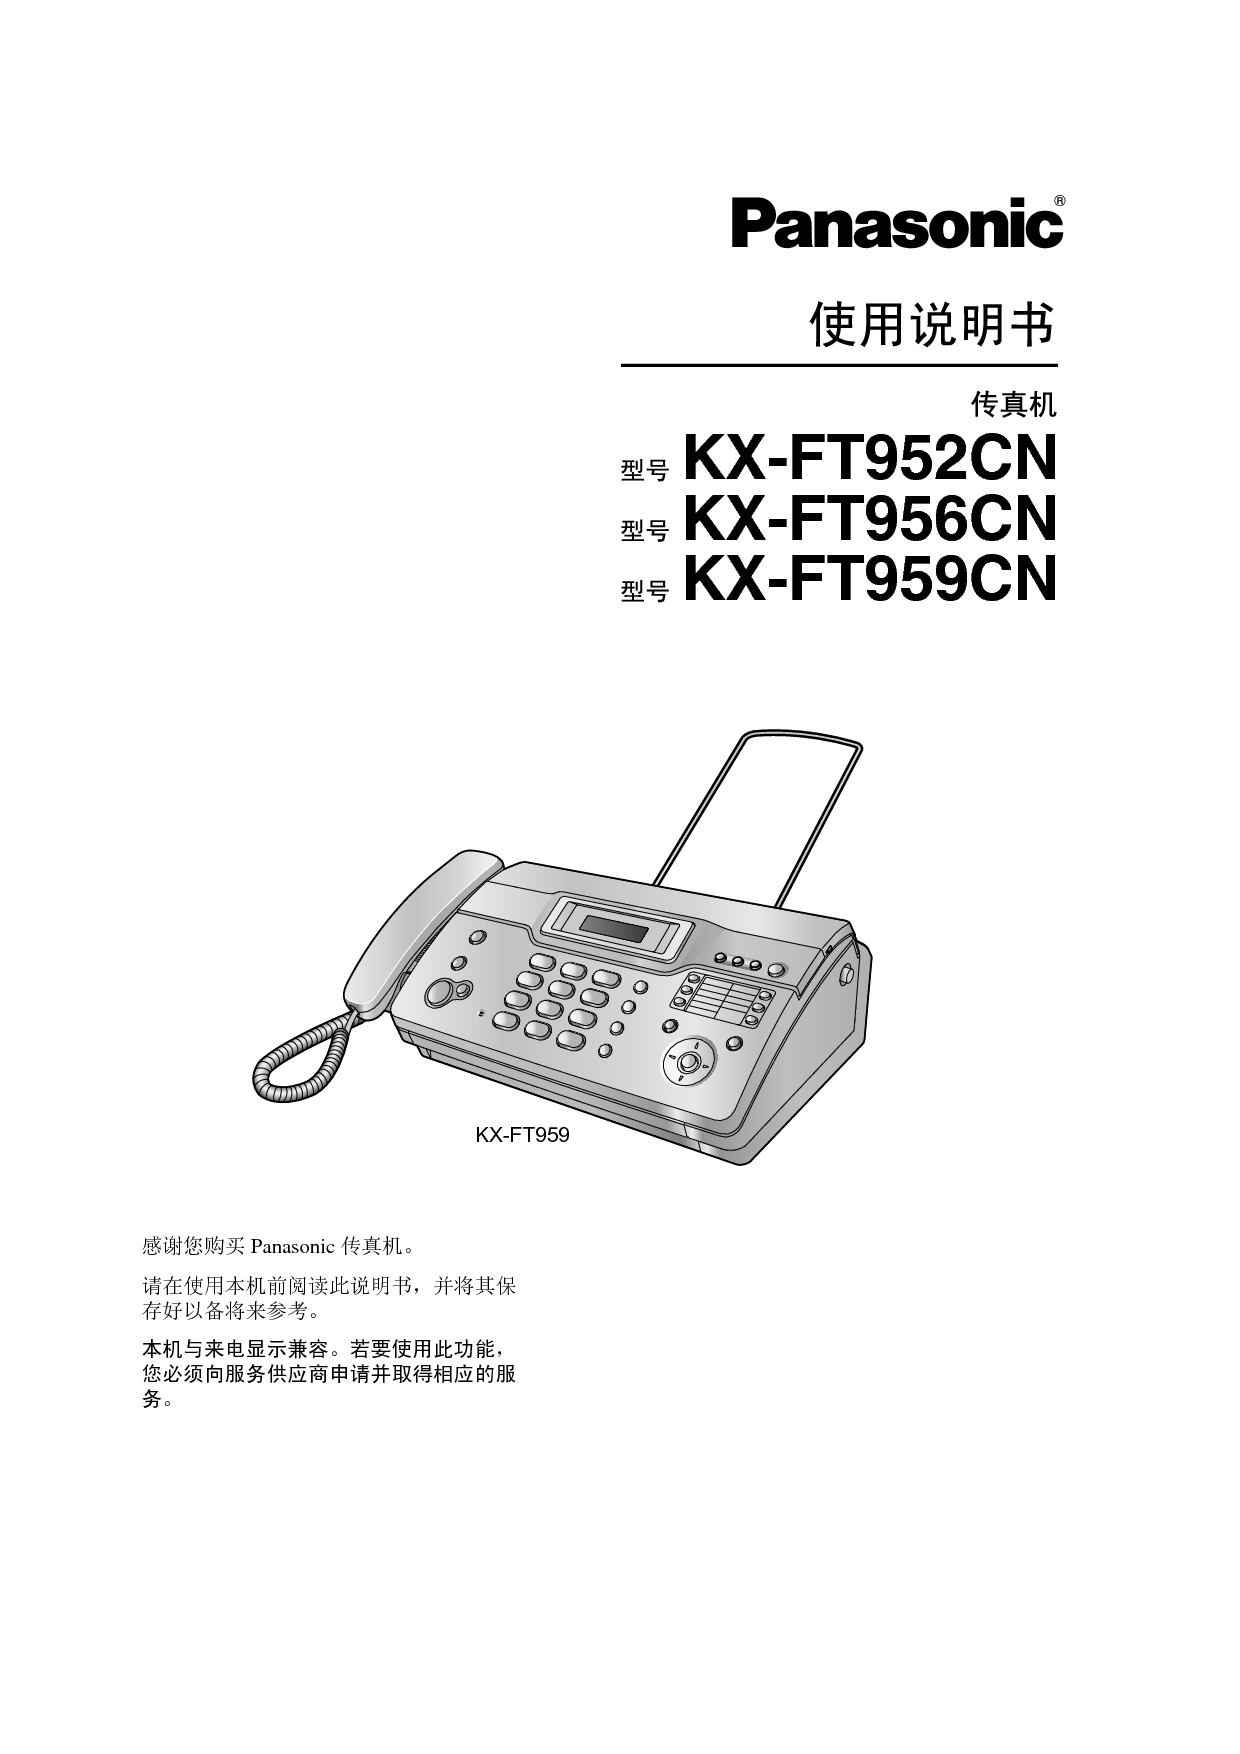 松下 Panasonic KX-FT952CN 说明书 封面